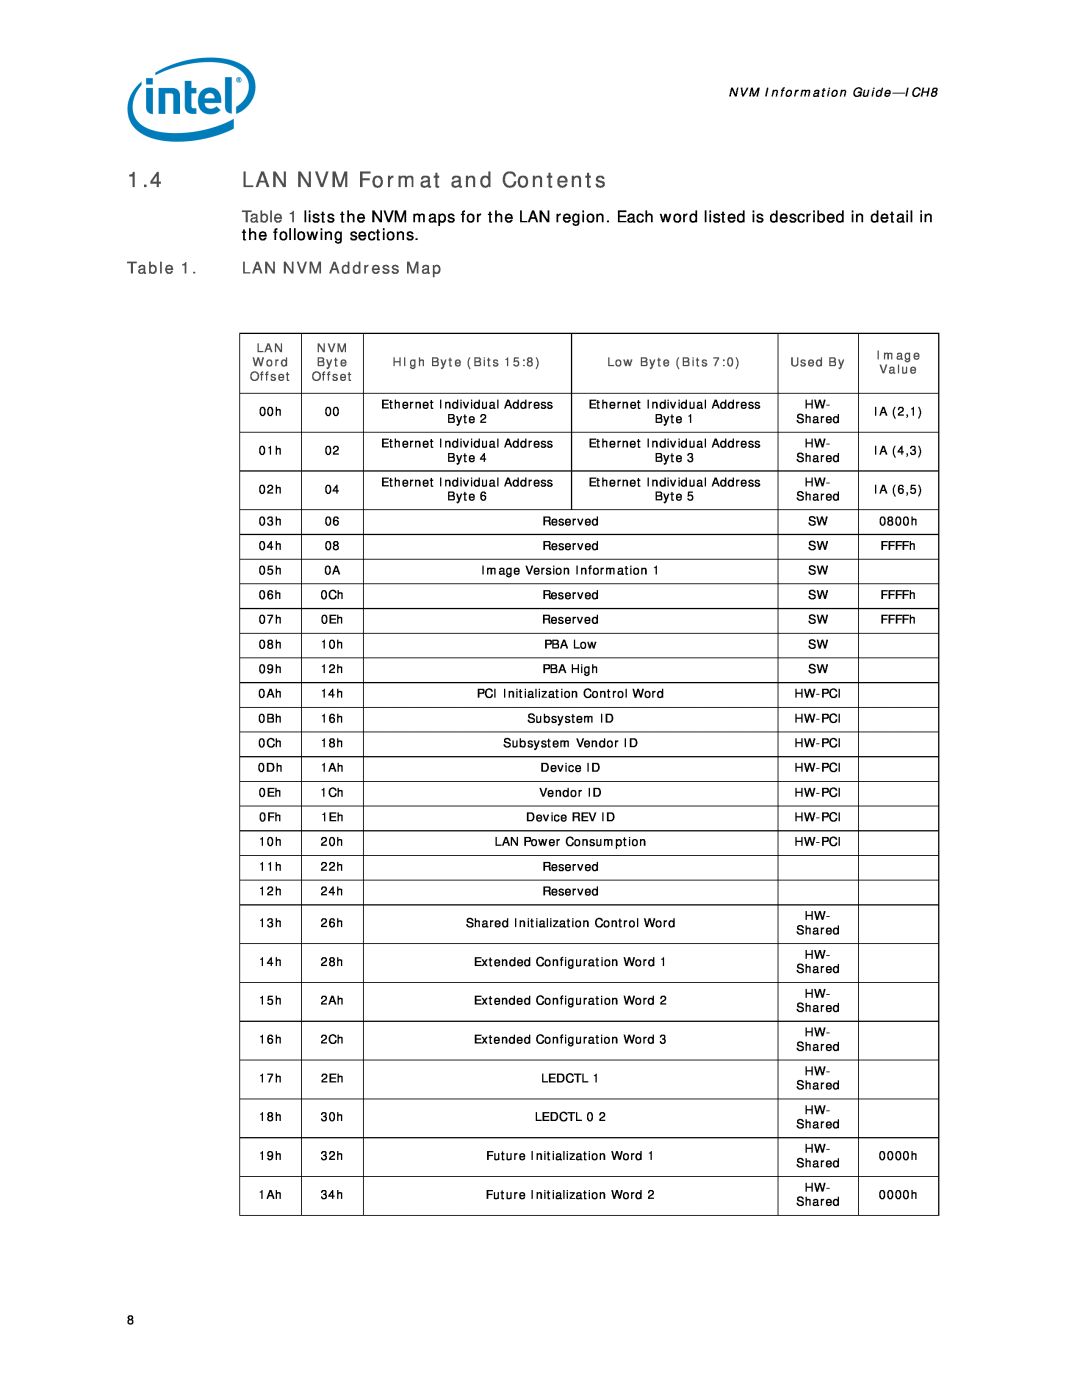 Intel 8 LAN manual 1.4LAN NVM Format and Contents, LAN NVM Address Map, NVM Information Guide-ICH8 